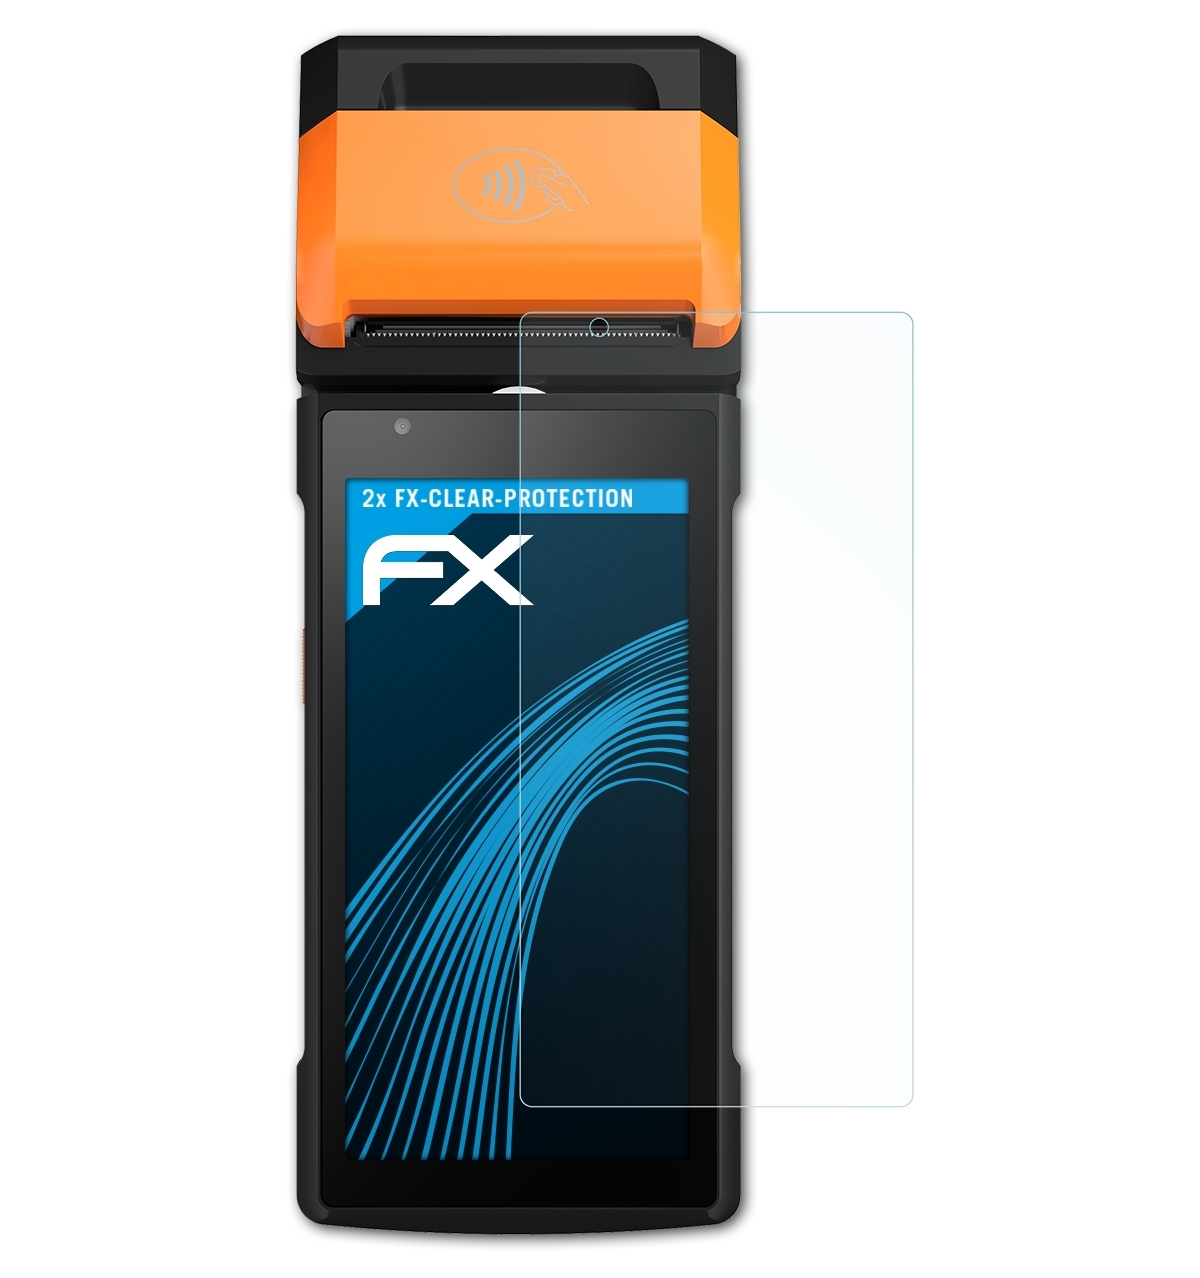 ATFOLIX 2x FX-Clear Displayschutz(für Sunmi P2)